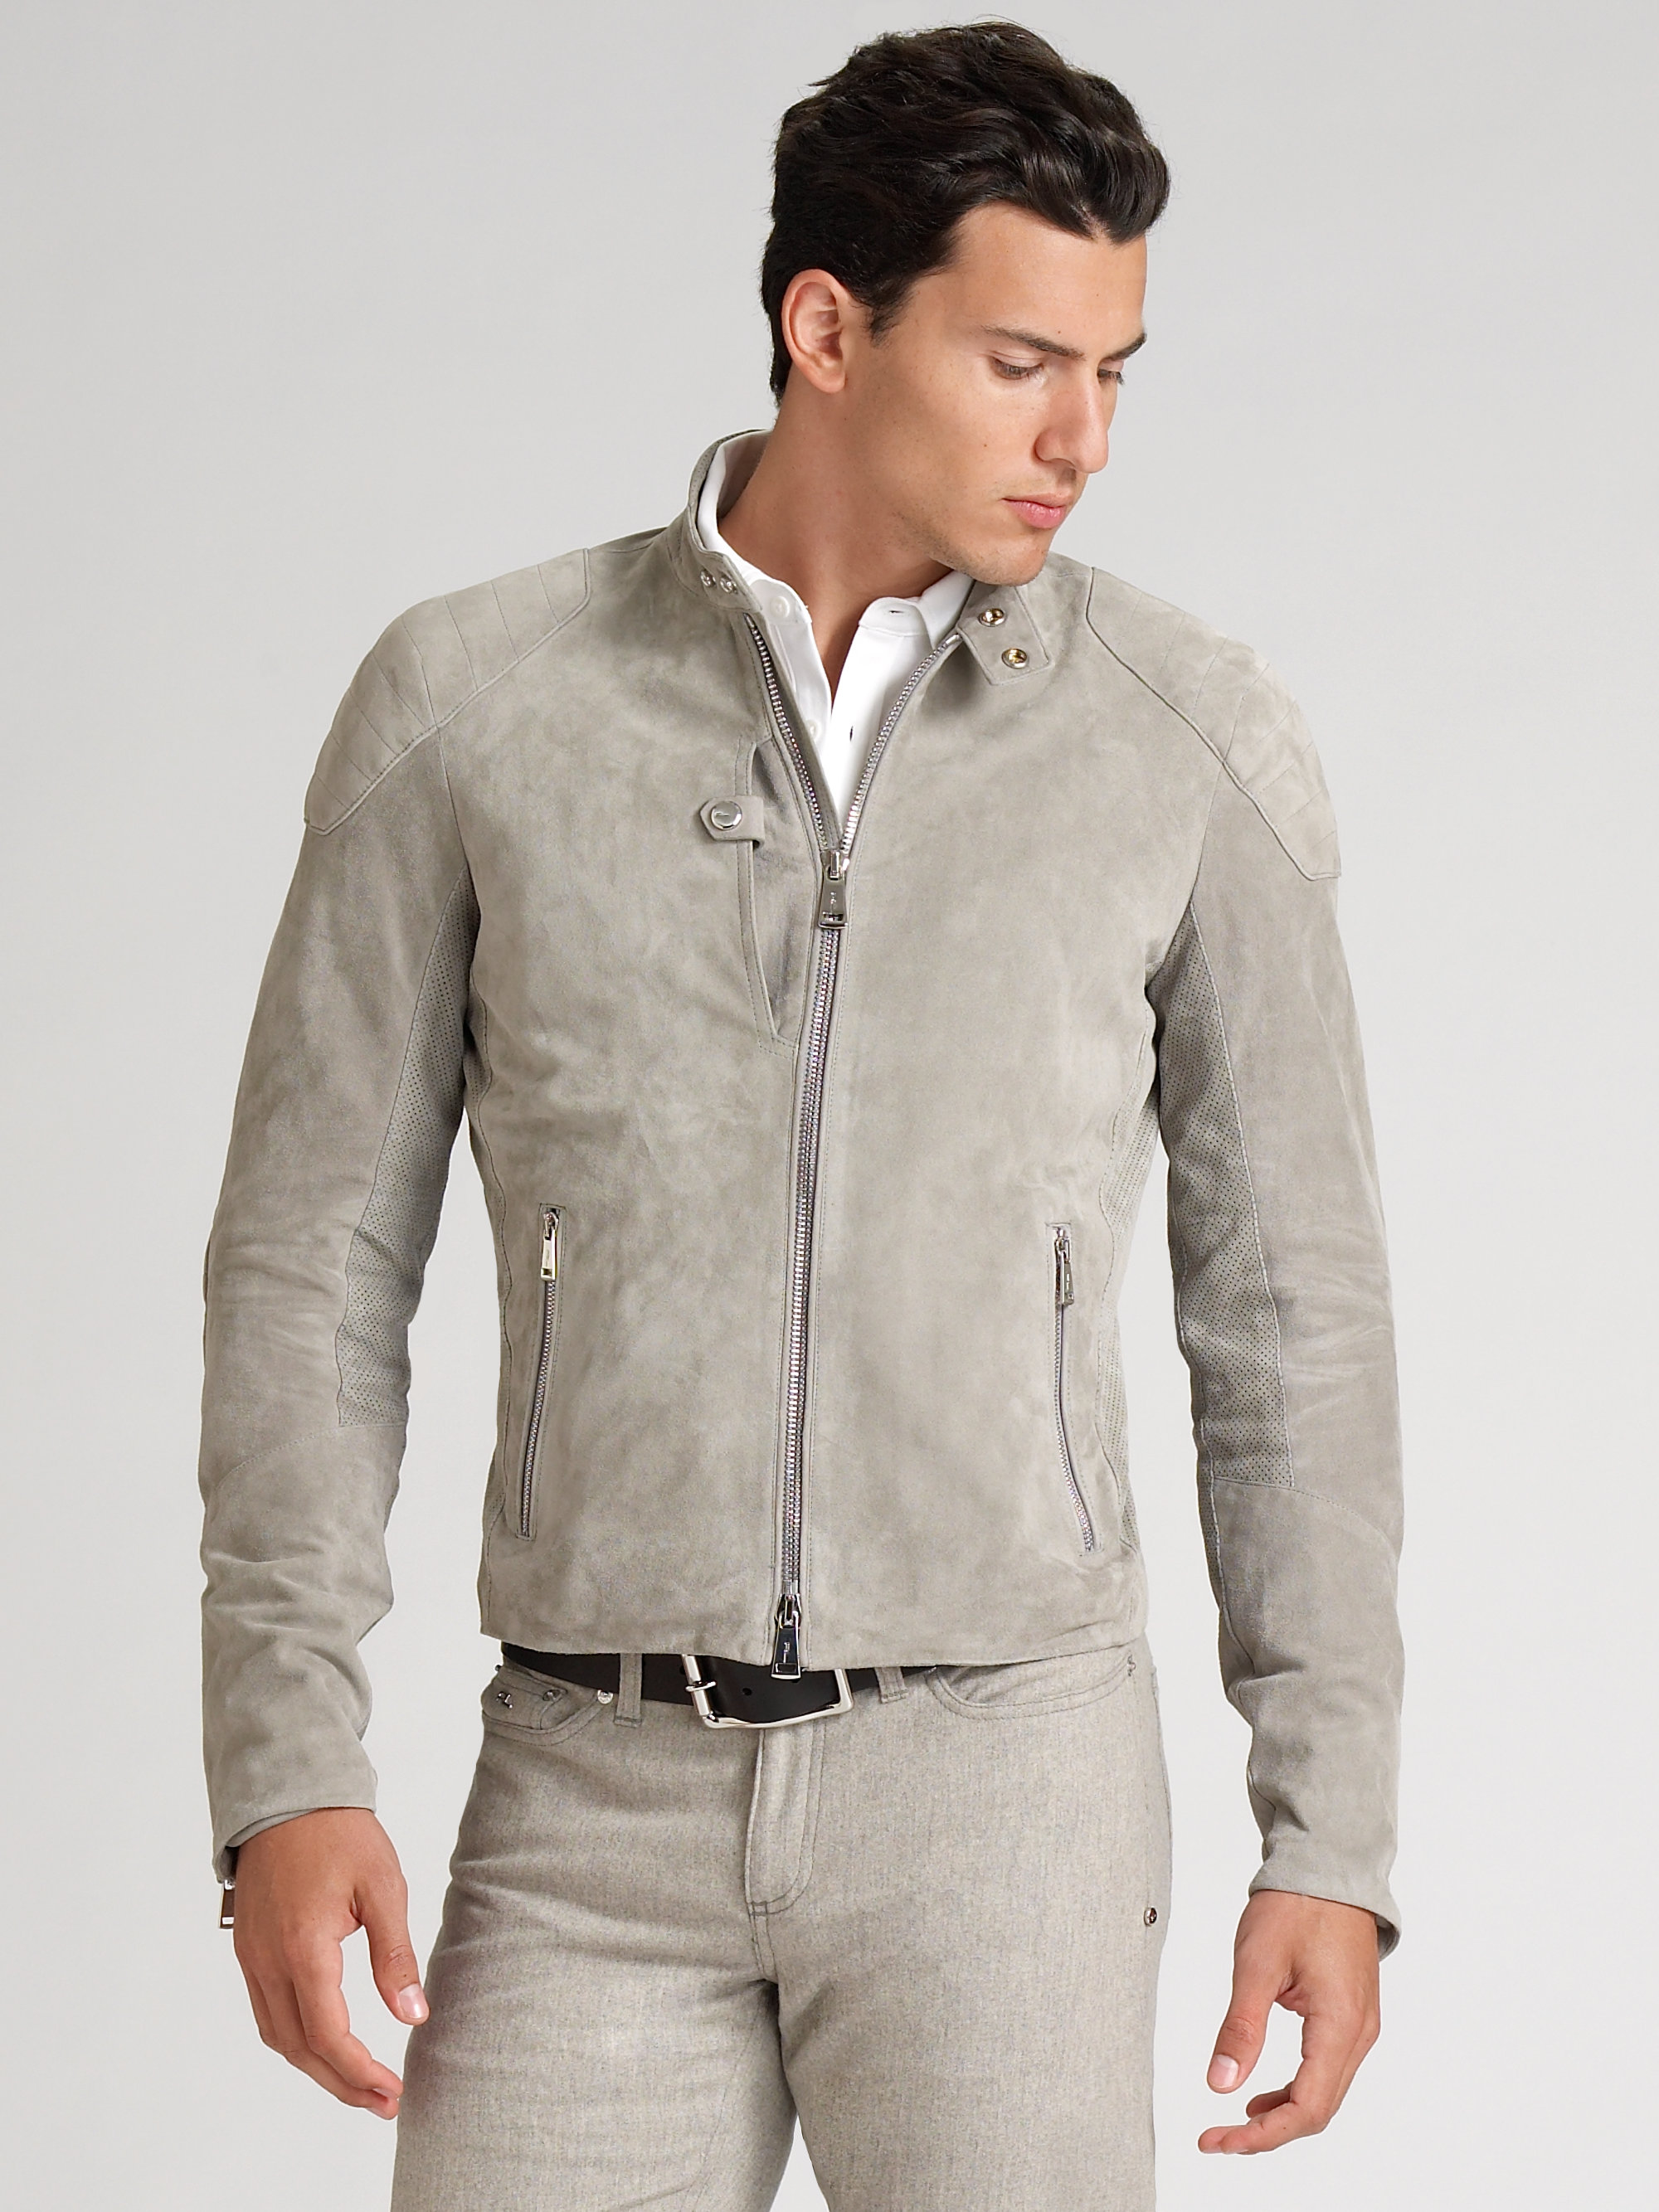 Ralph Lauren Black Label Suede Jacket in Light Grey (Gray) for Men - Lyst